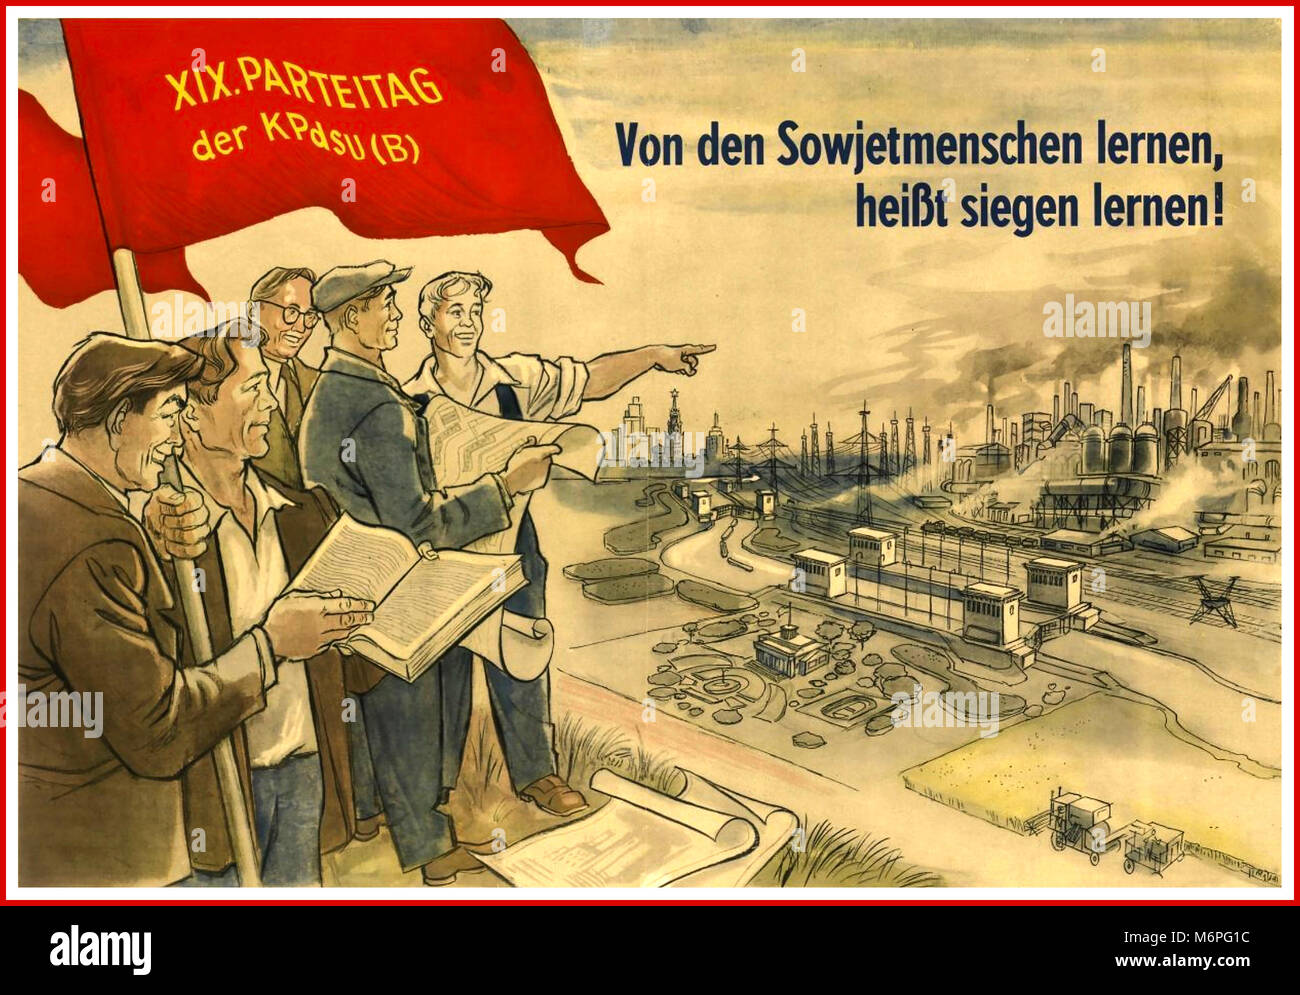 Dopo la guerra la Germania est tedesco Vintage poster di propaganda del post guerra Germania degli anni cinquanta la pianificazione dei comunisti la ricostruzione di Dresda "imparare dal popolo sovietico significa imparare a vincere' dice lo slogan! Foto Stock